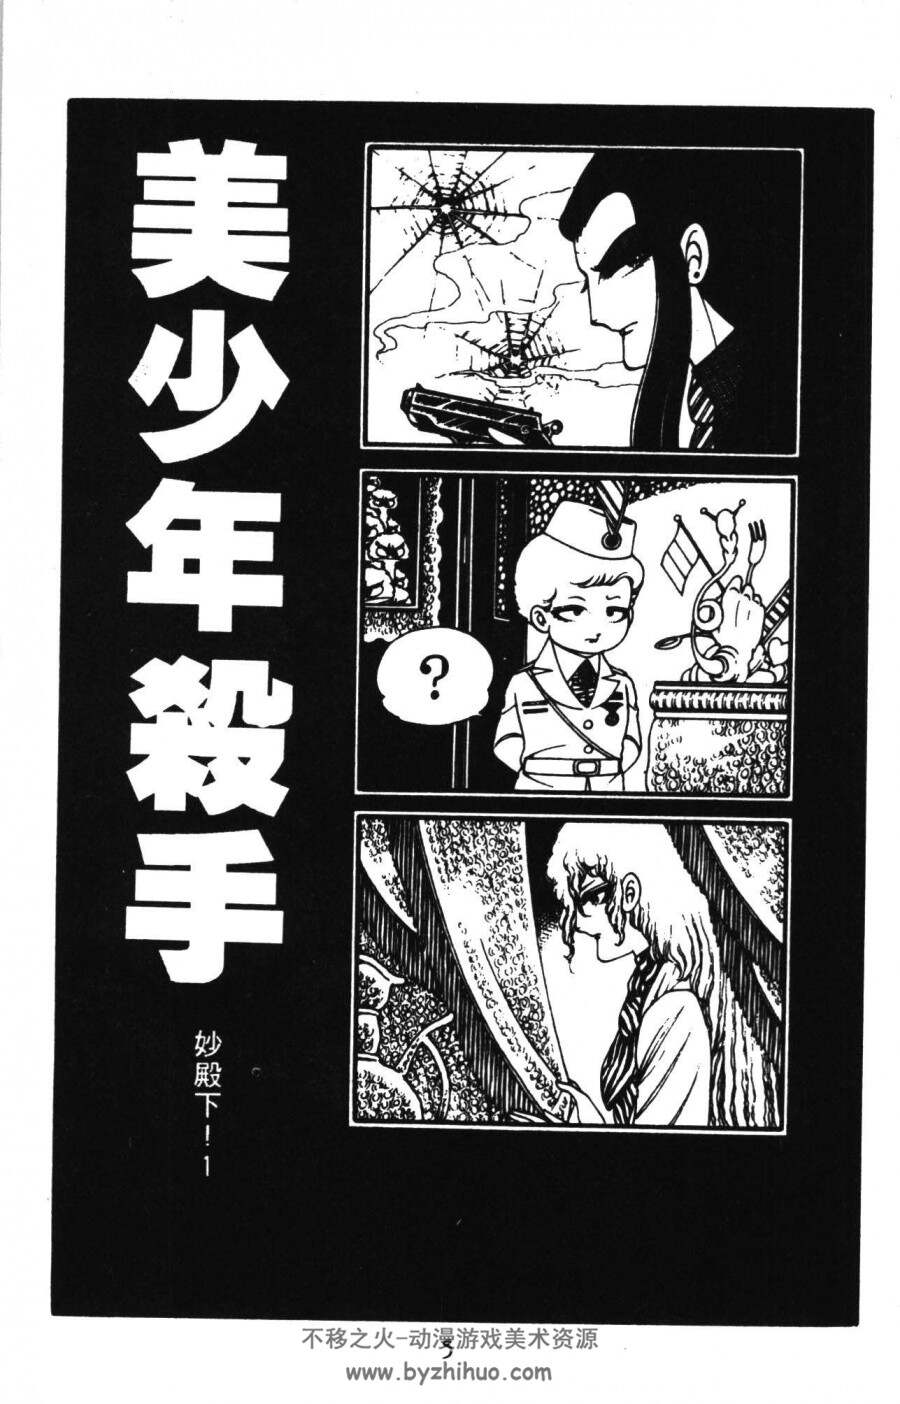 魔夜峰央 漫画作品合集 百度网盘下载